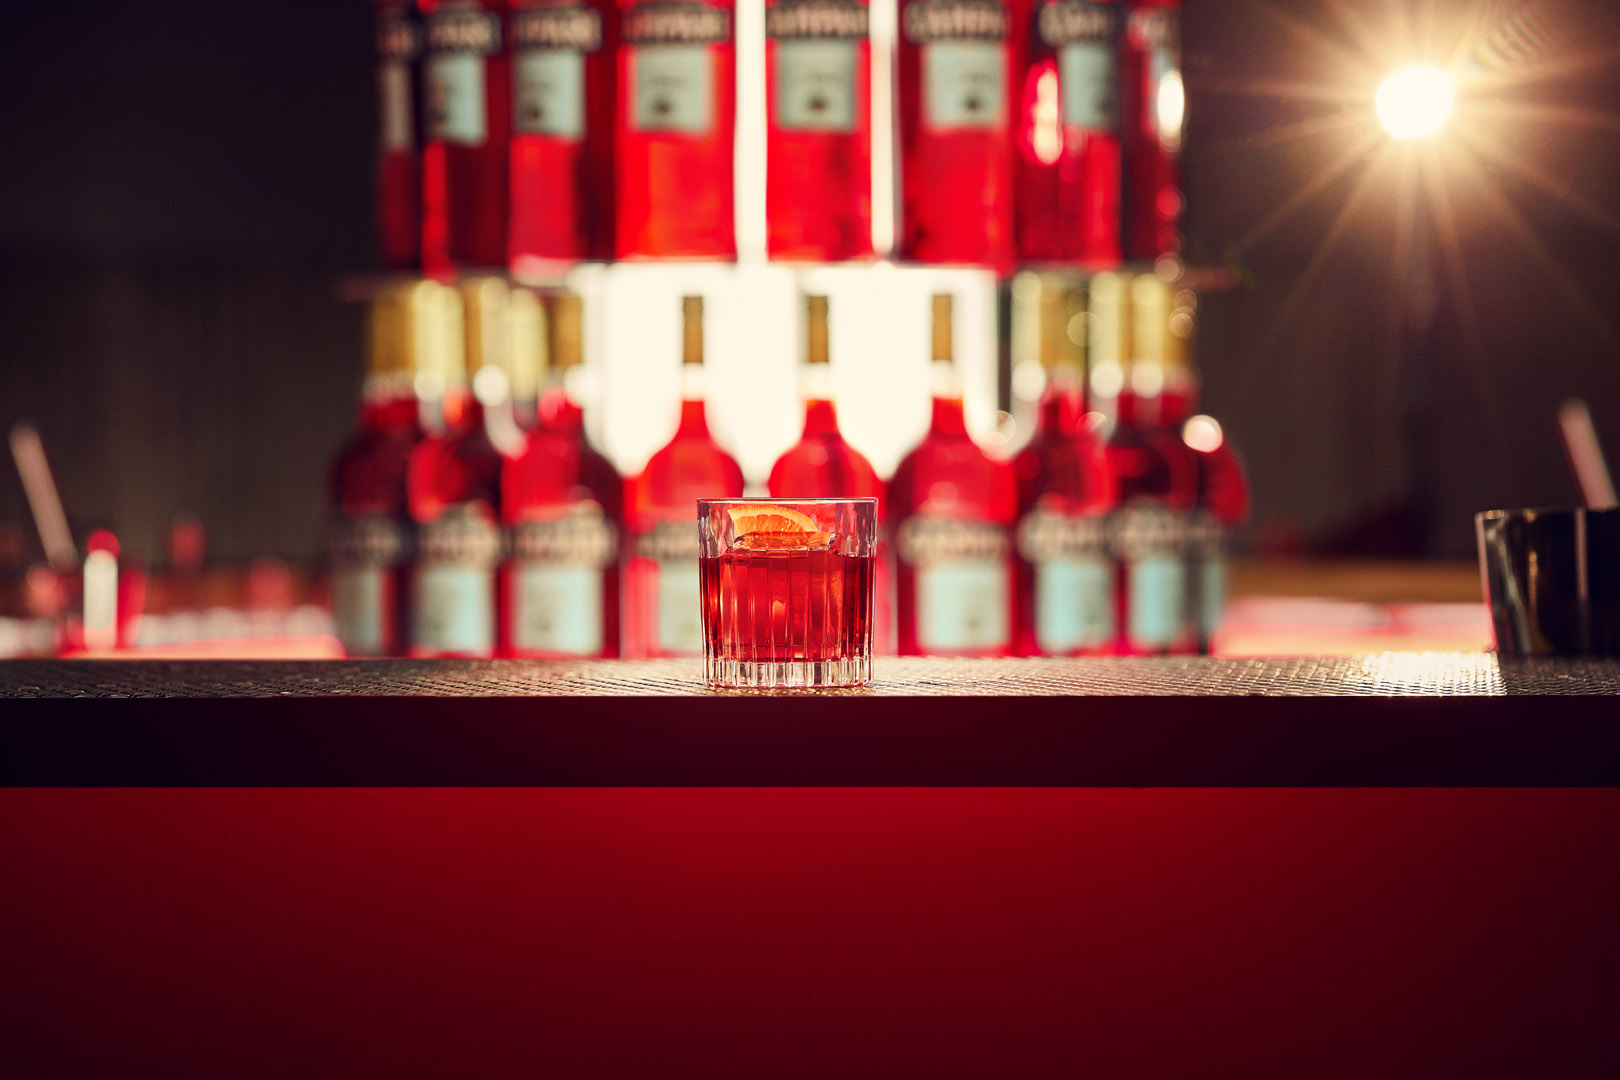 Negroni Old Fashioned Aperol Spritz Manhattan e Whiskey Sour tra i cocktail più bevuti al mondo